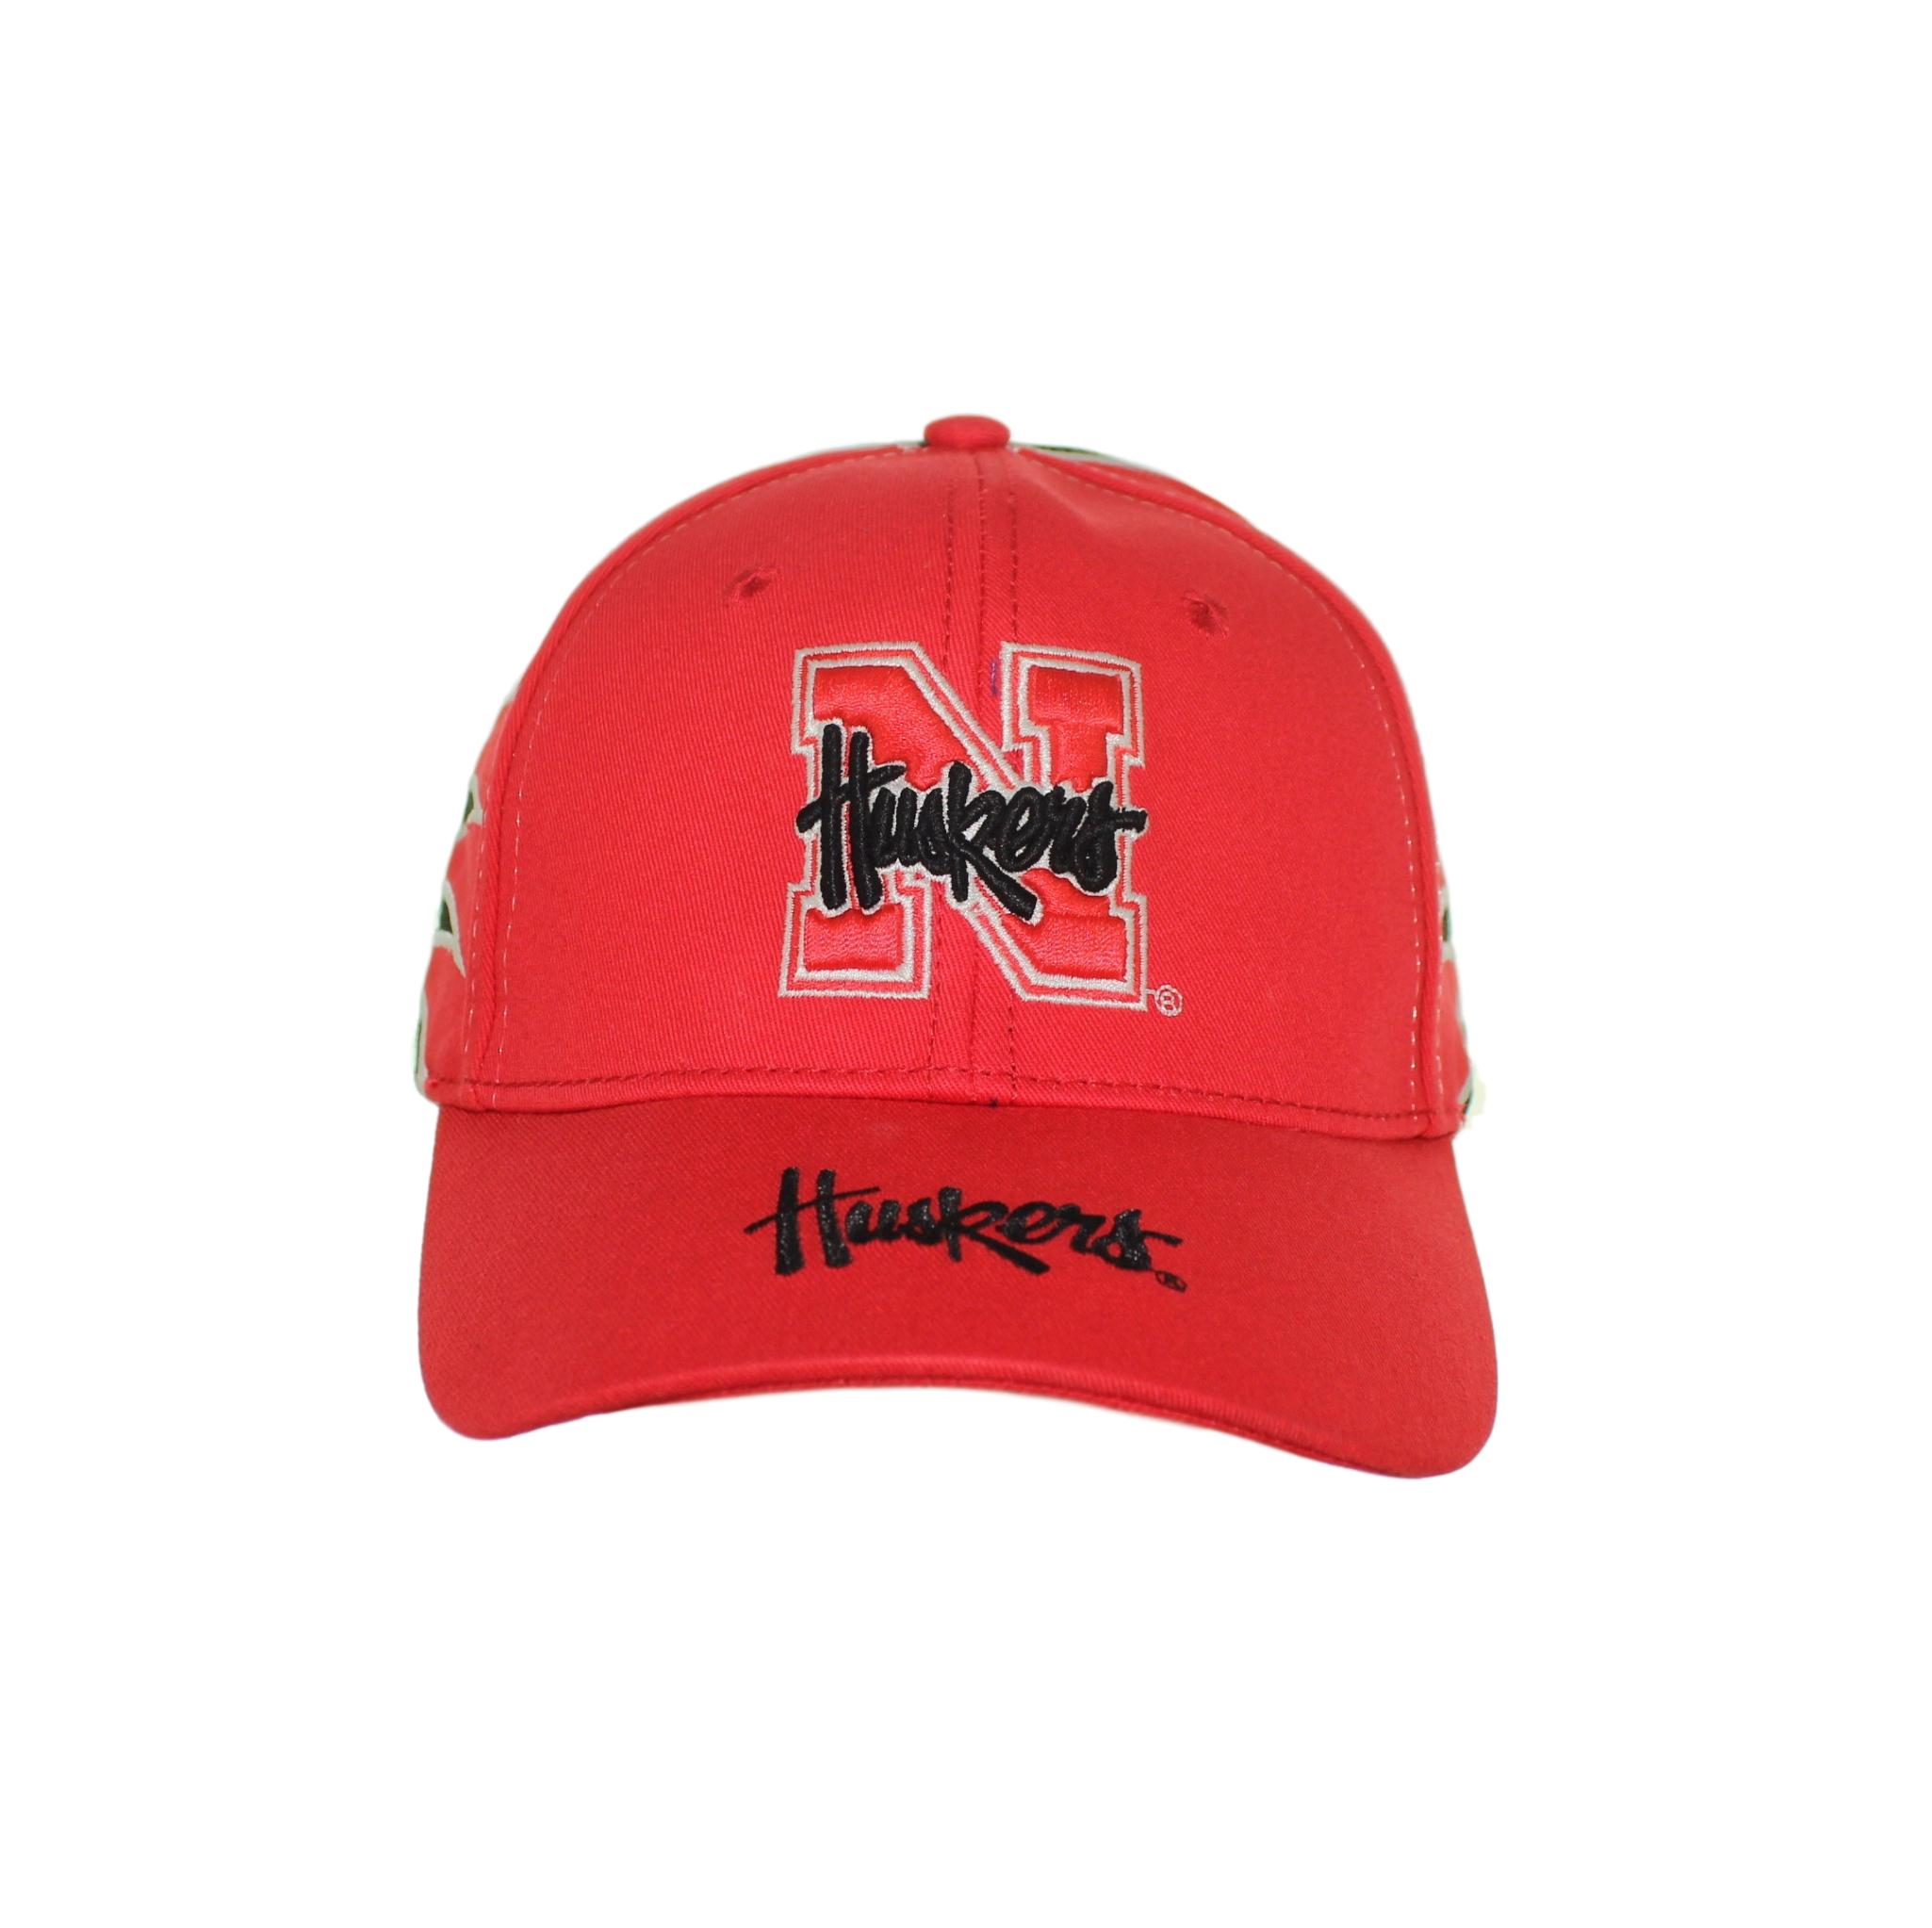 Red N Logo - Nebraska Cornhuskers – Red “N” Logo on Red and Black Adjustable Hat ...